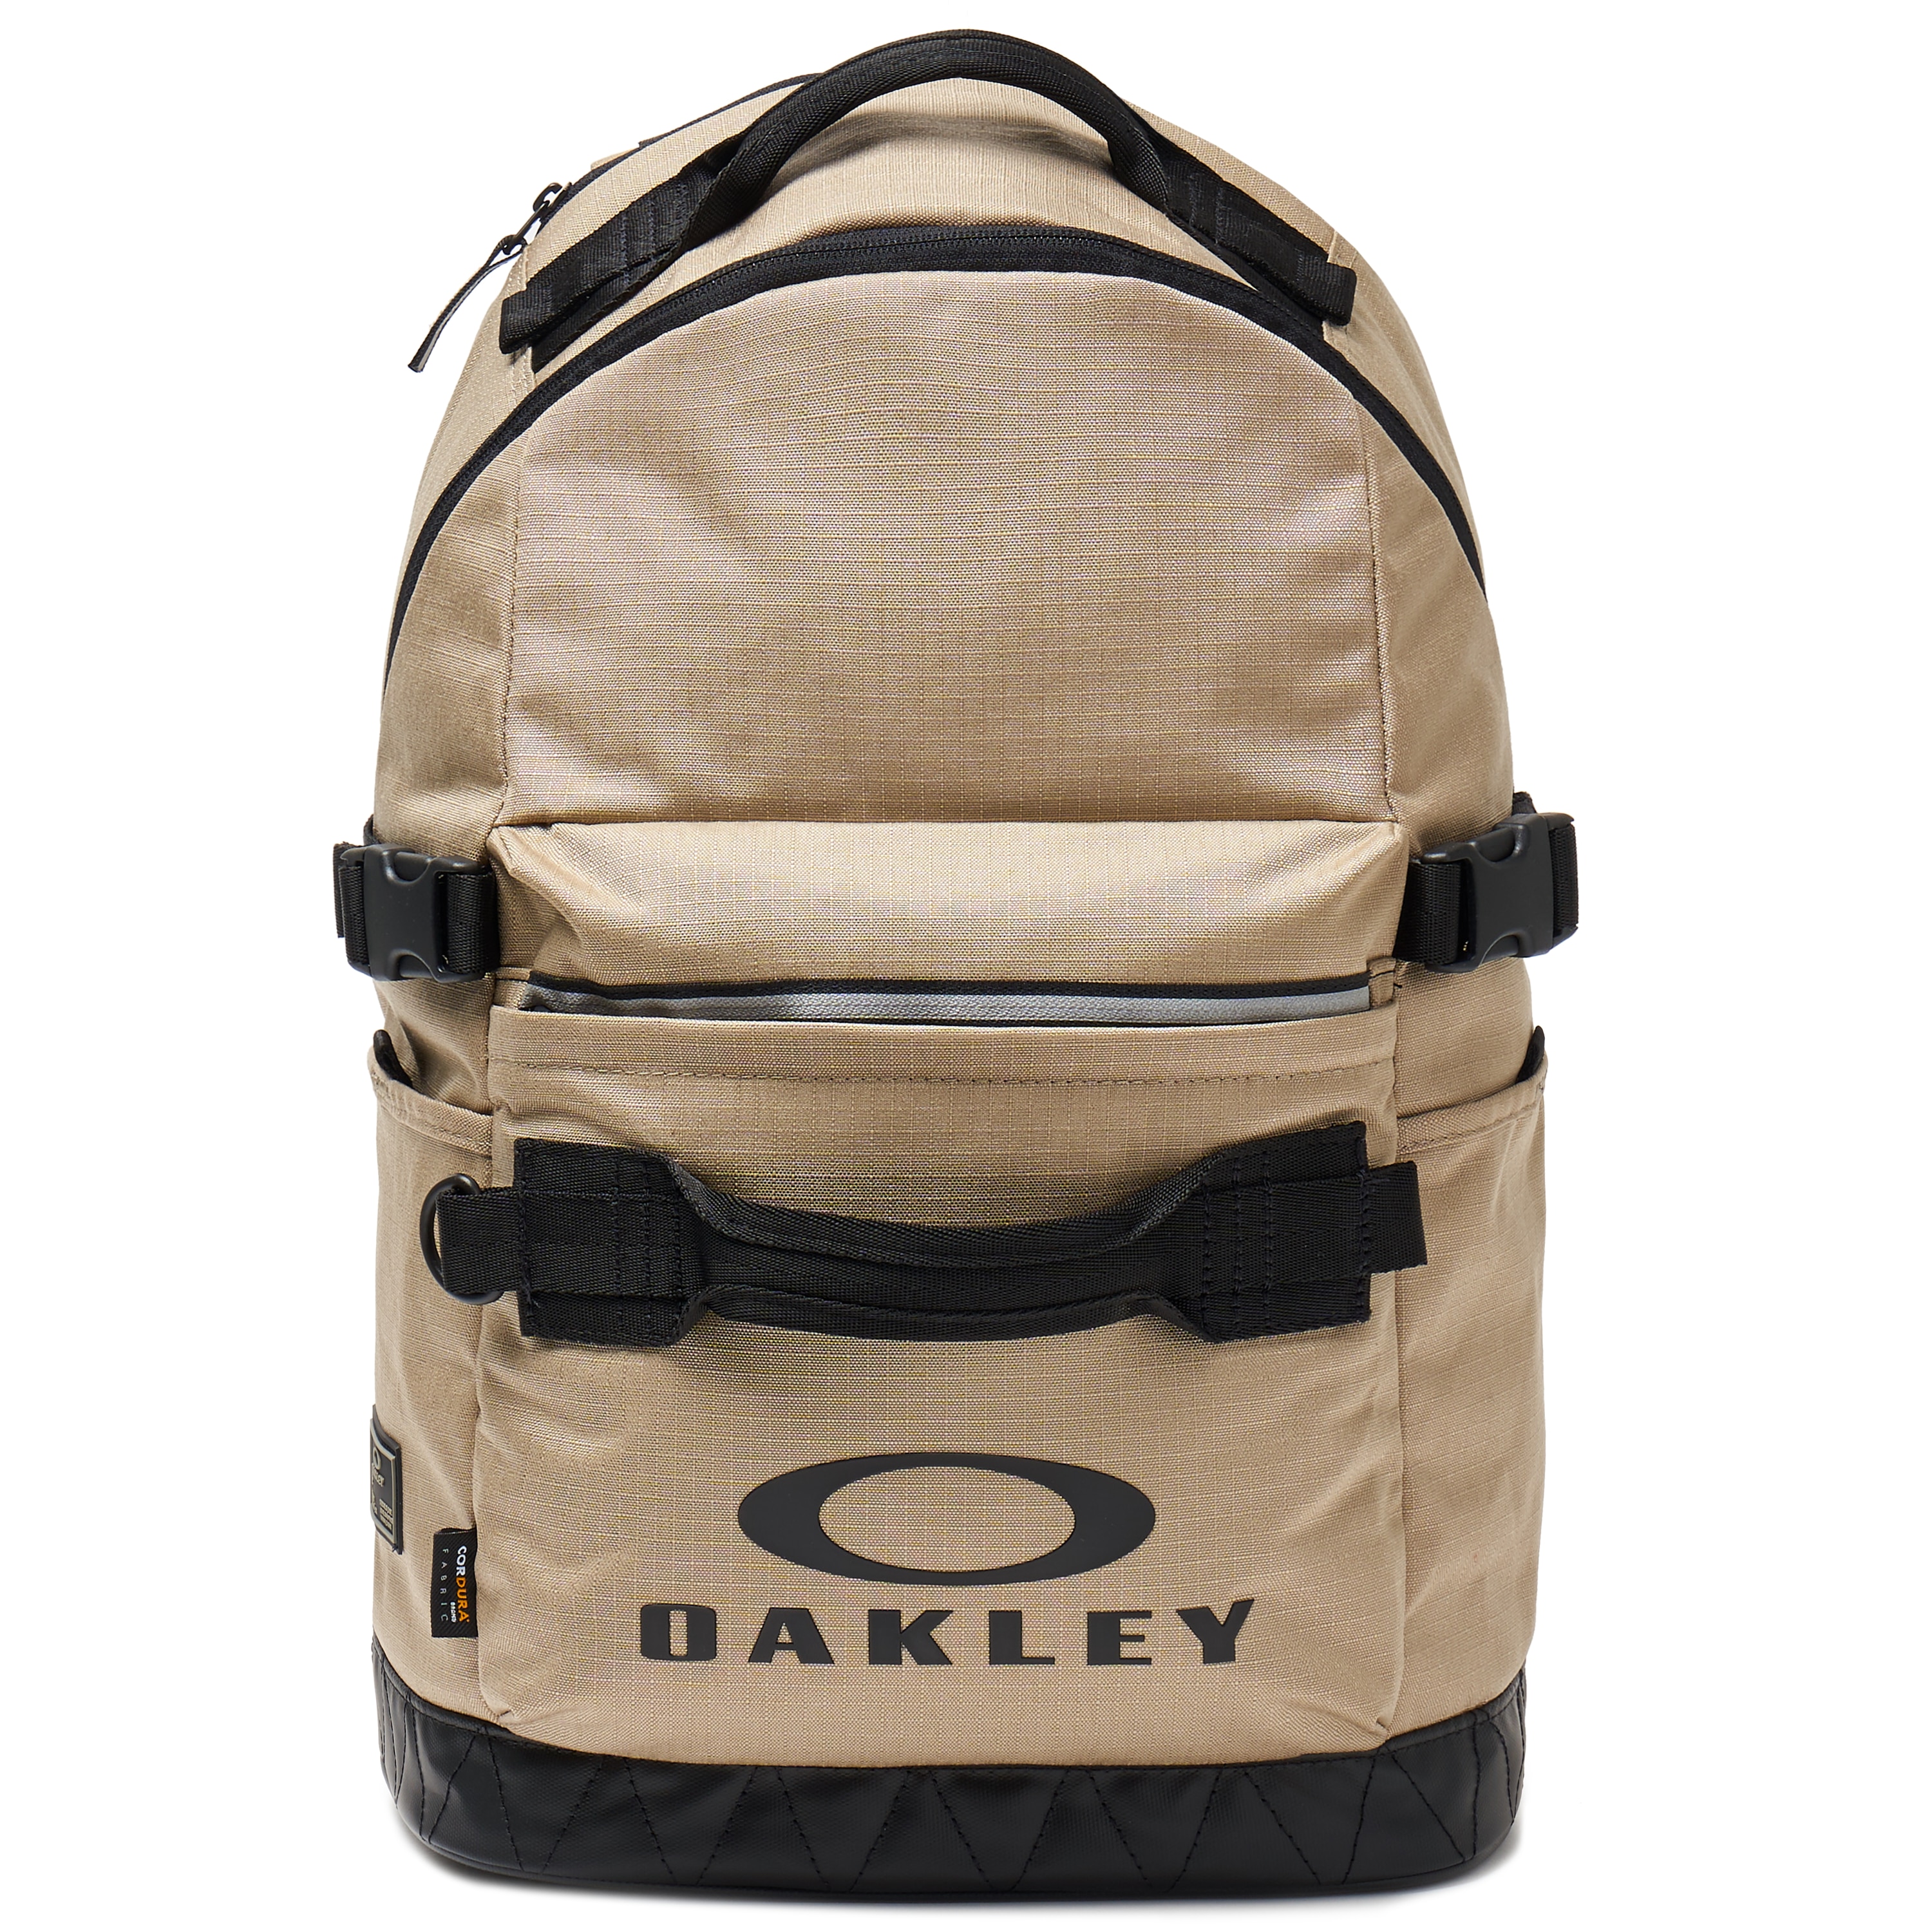 oakley backpacks near me